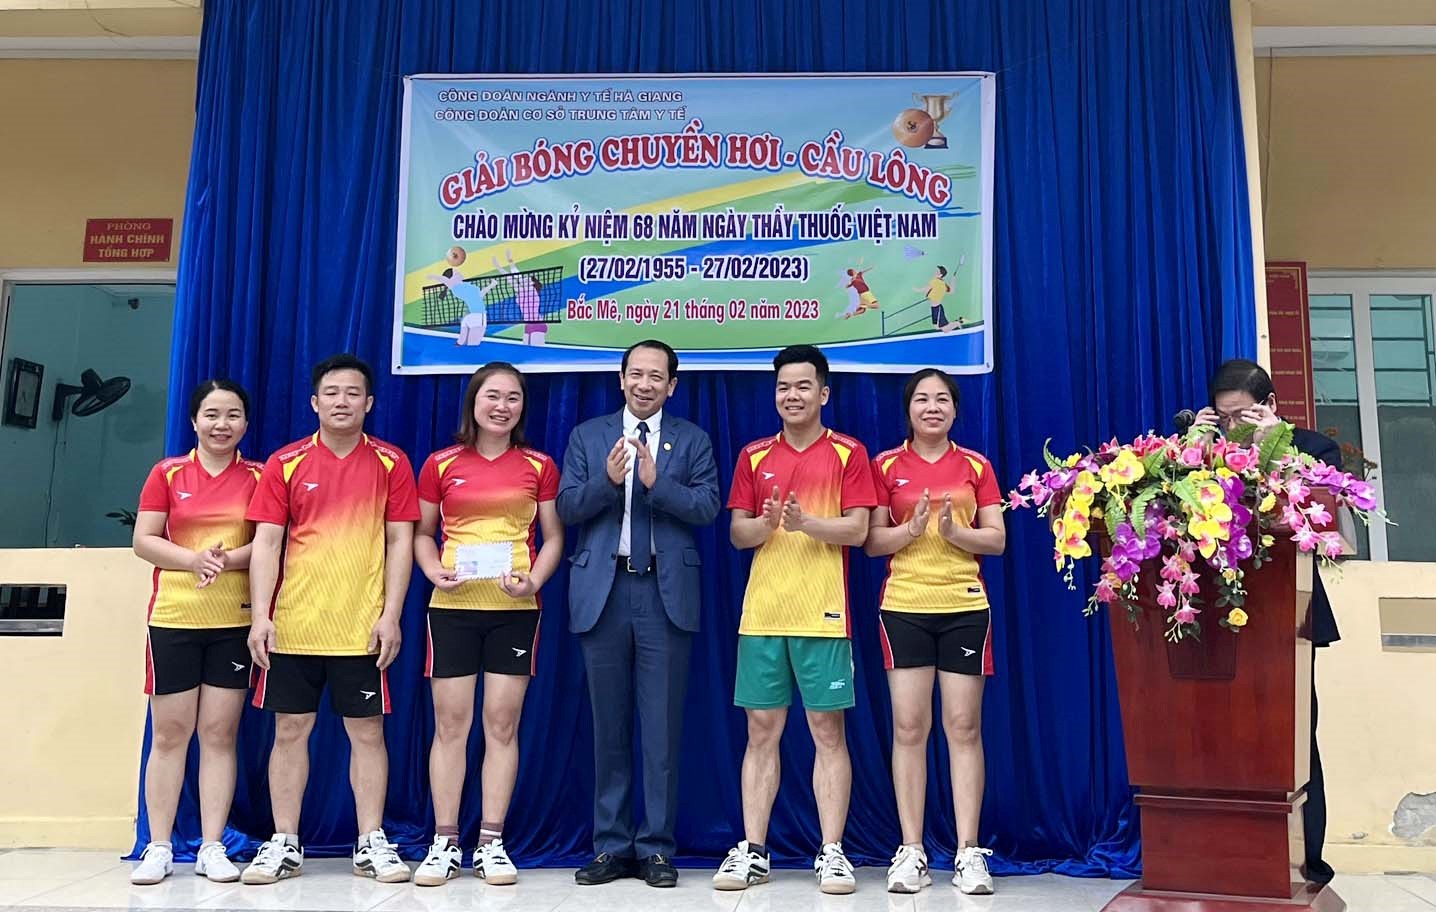 Đồng chí Trần Đức Quý - Ủy viên ban chấp hành Đảng bộ tỉnh, Phó chủ tịch Ủy ban nhân dân tỉnh trao giải cho những đội đạt giải bóng chuyền hơi mừng 27.2